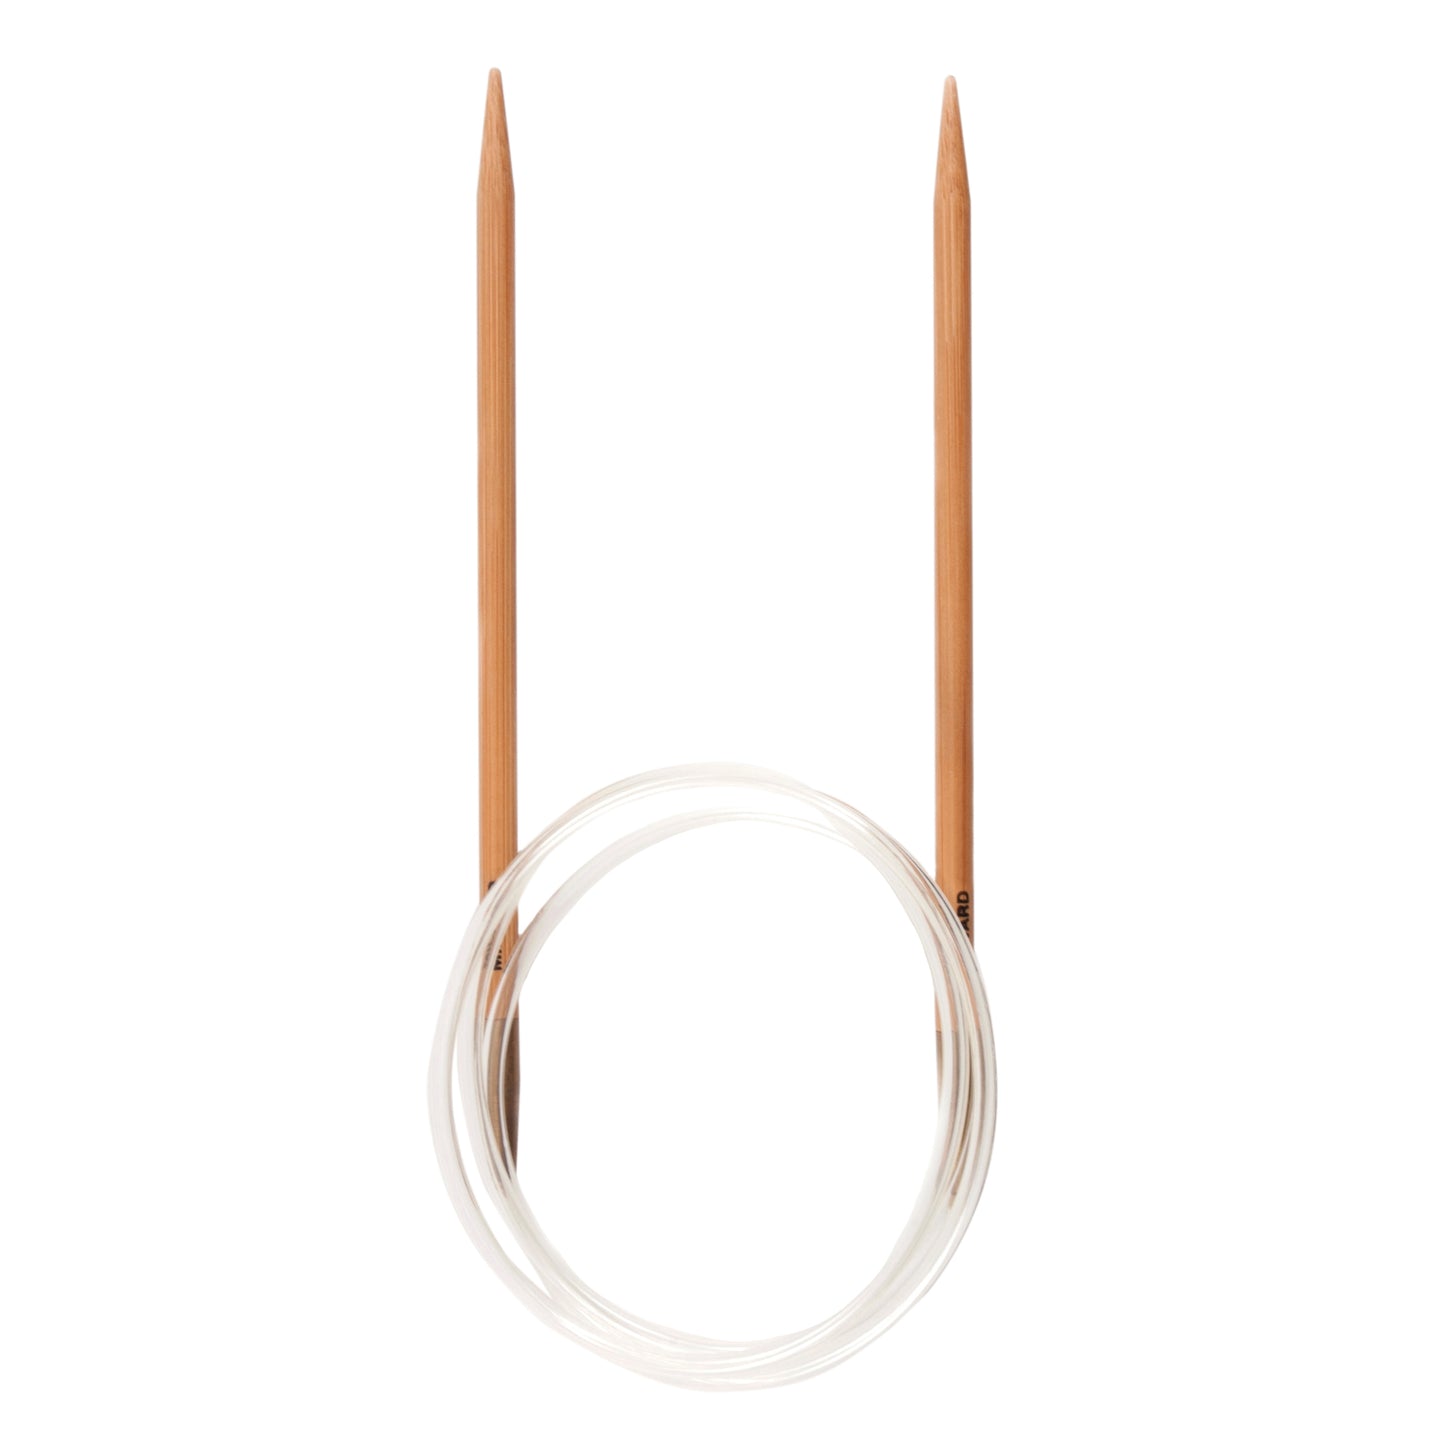 Circular Knitting Pins (Needles) - Bamboo